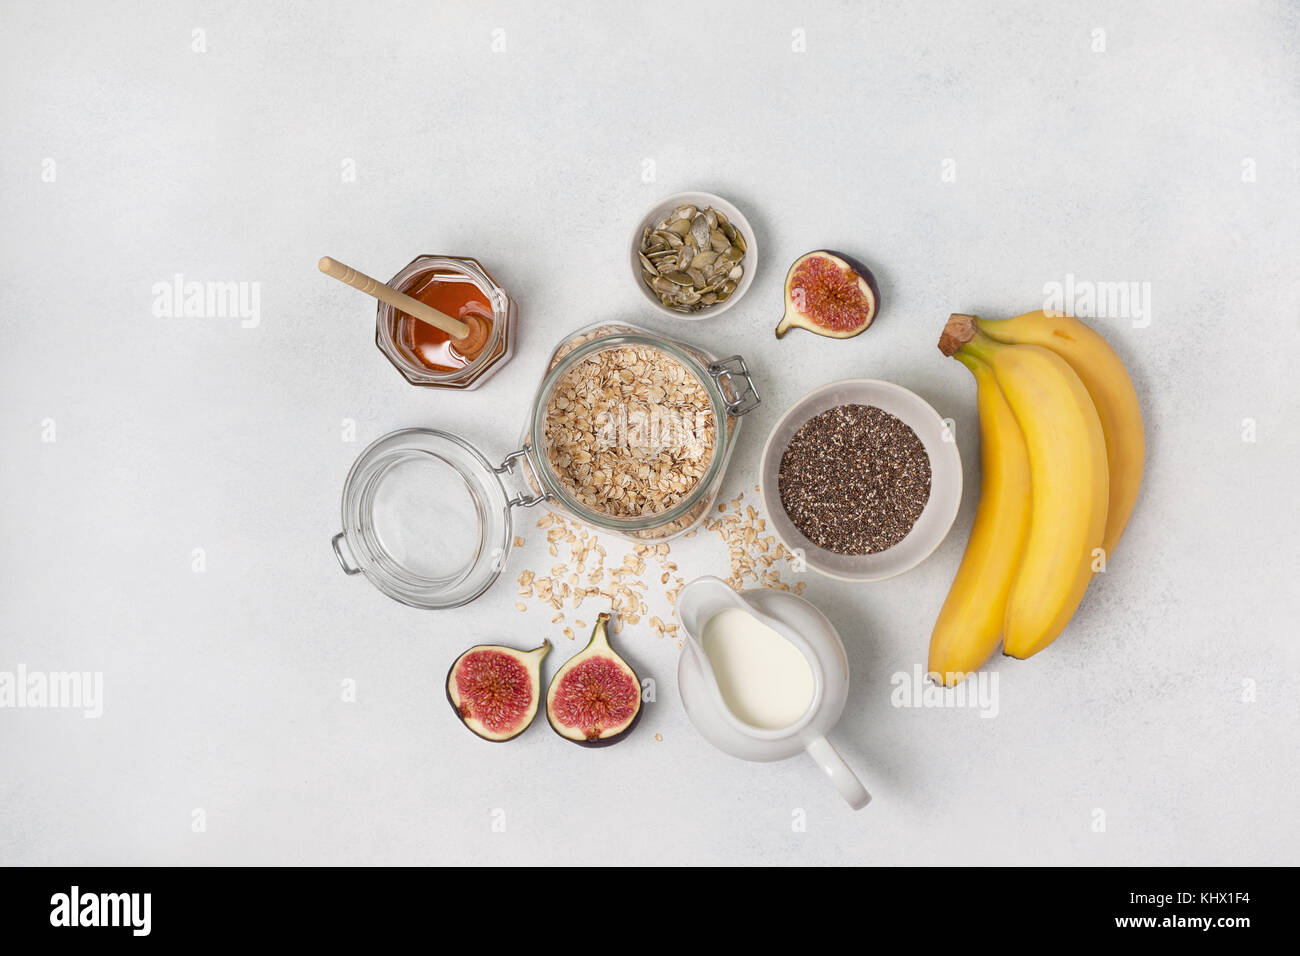 Ingrédients pour petit-déjeuner : avoine, lait, figues, bananes, graines de potiron. Vue de dessus Banque D'Images